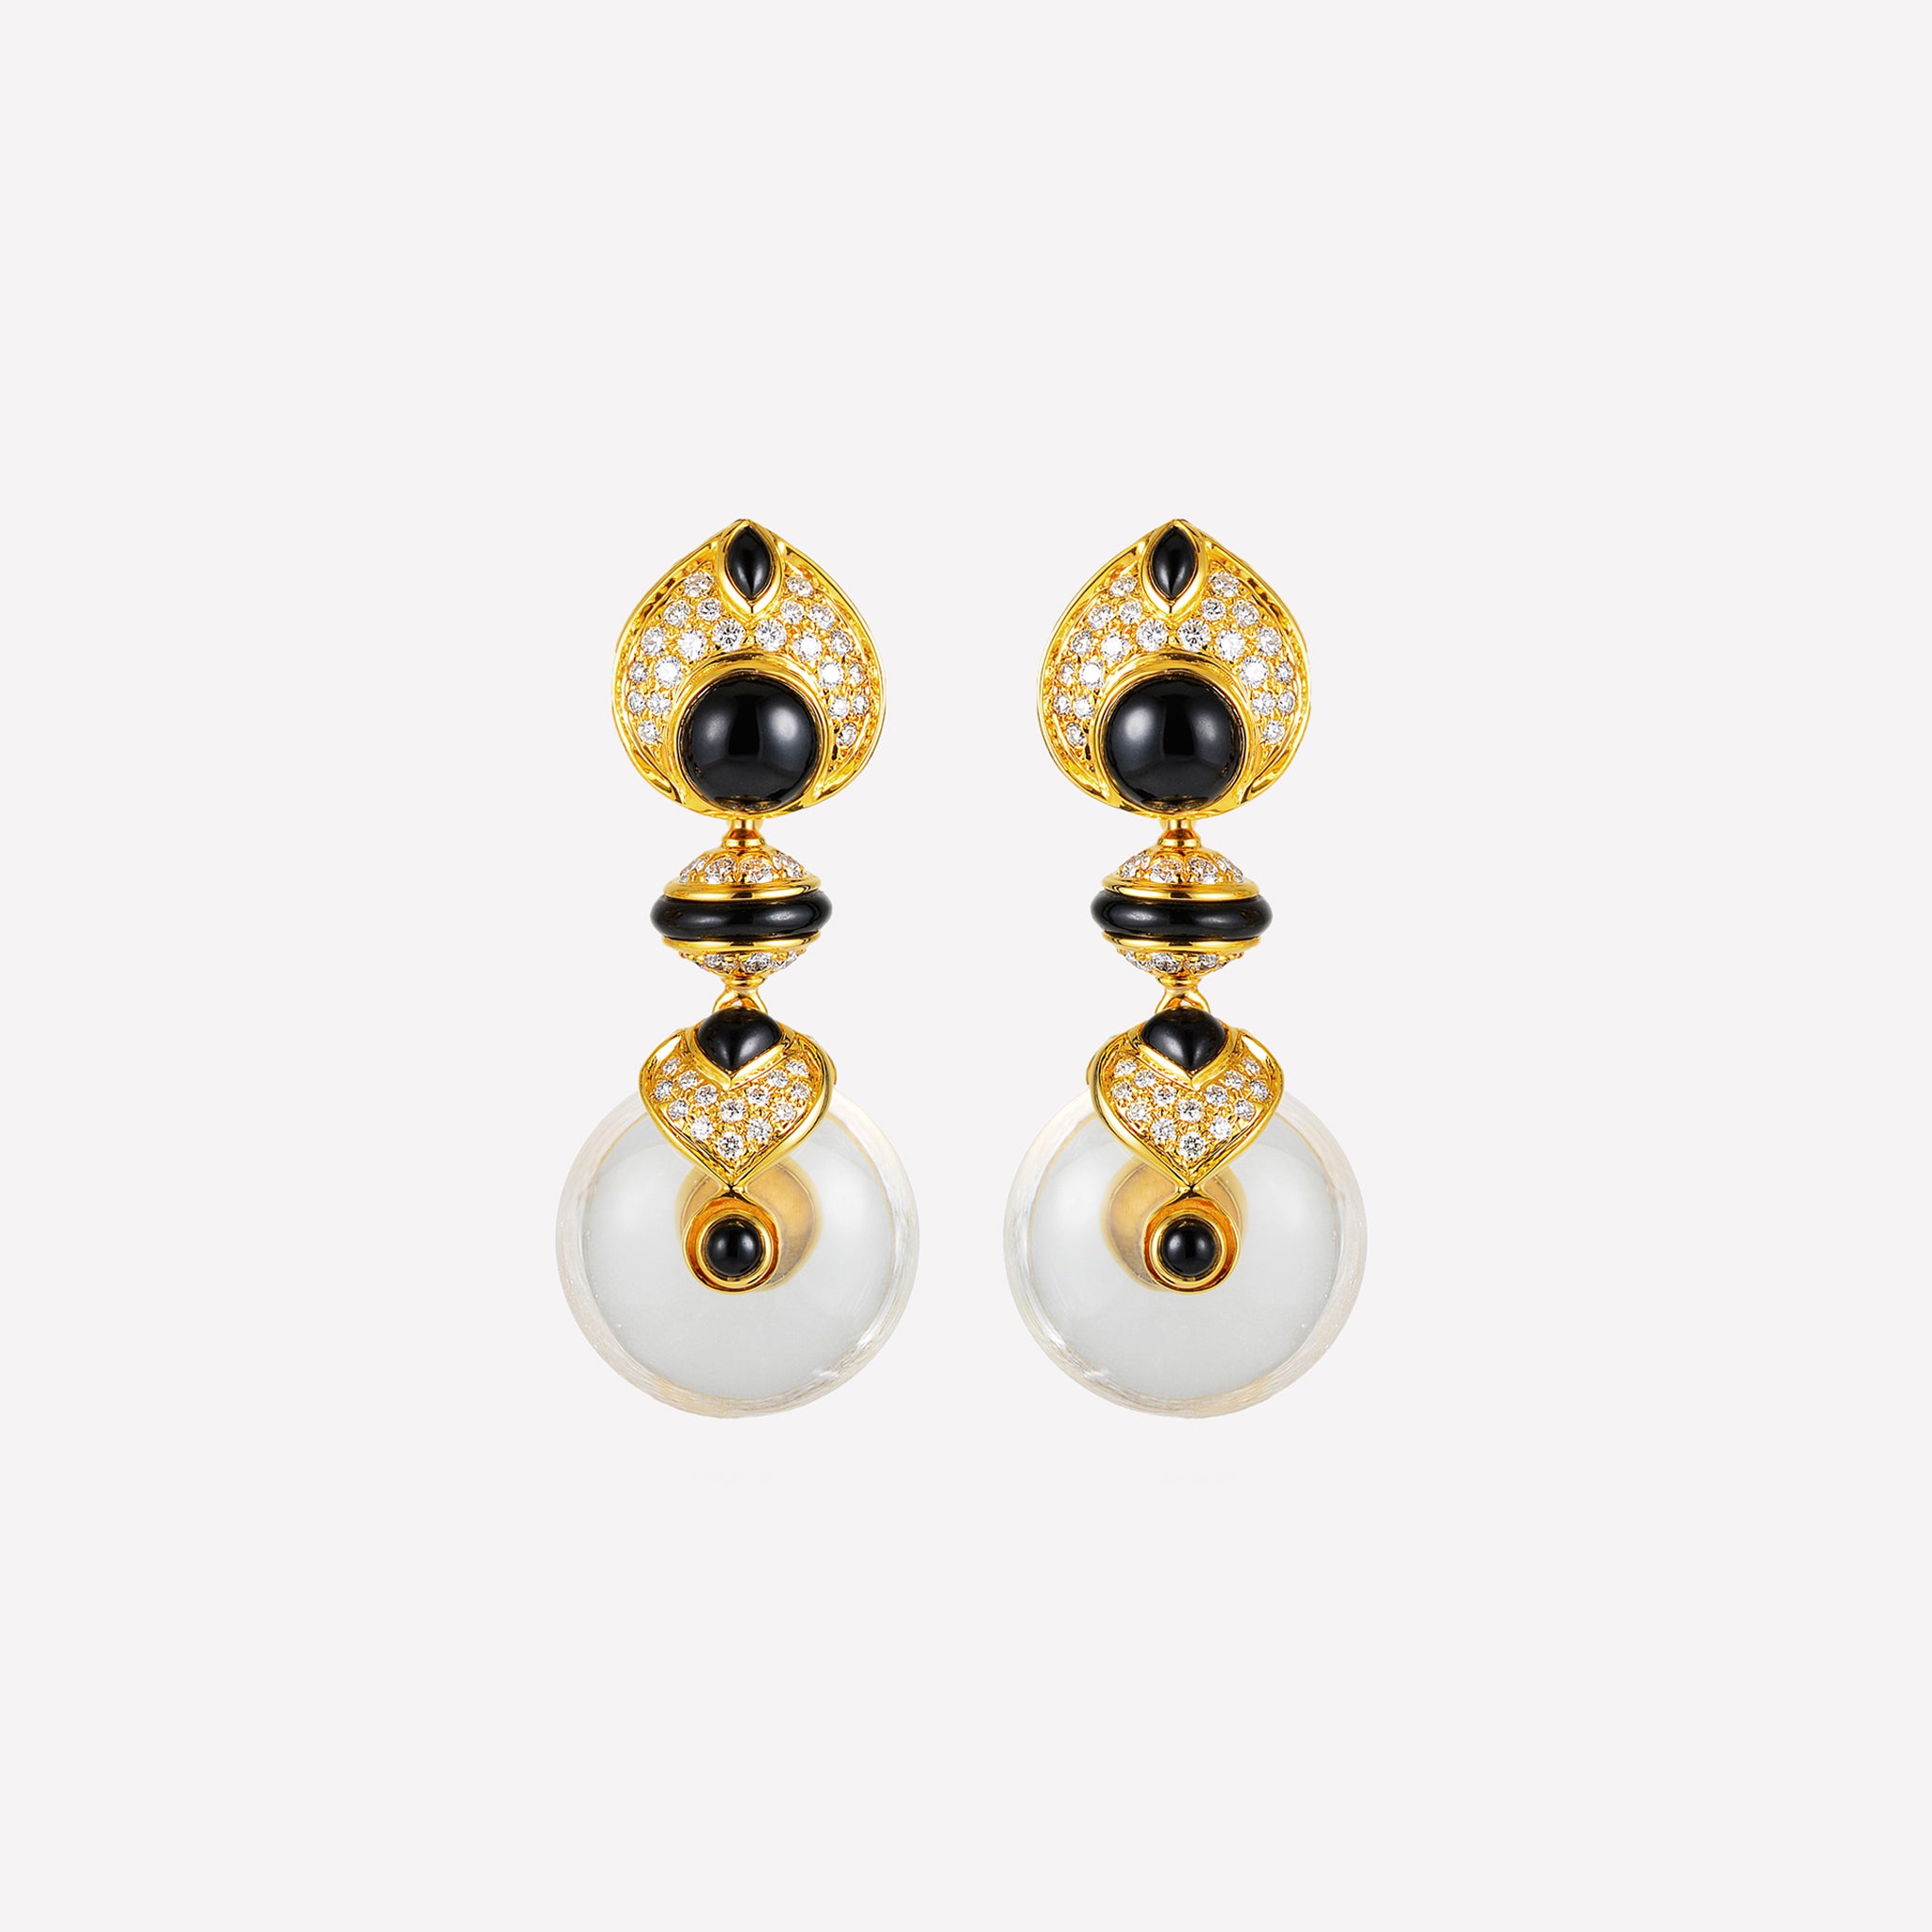 marinab.com, Pneu Black Jade and Gold Earrings